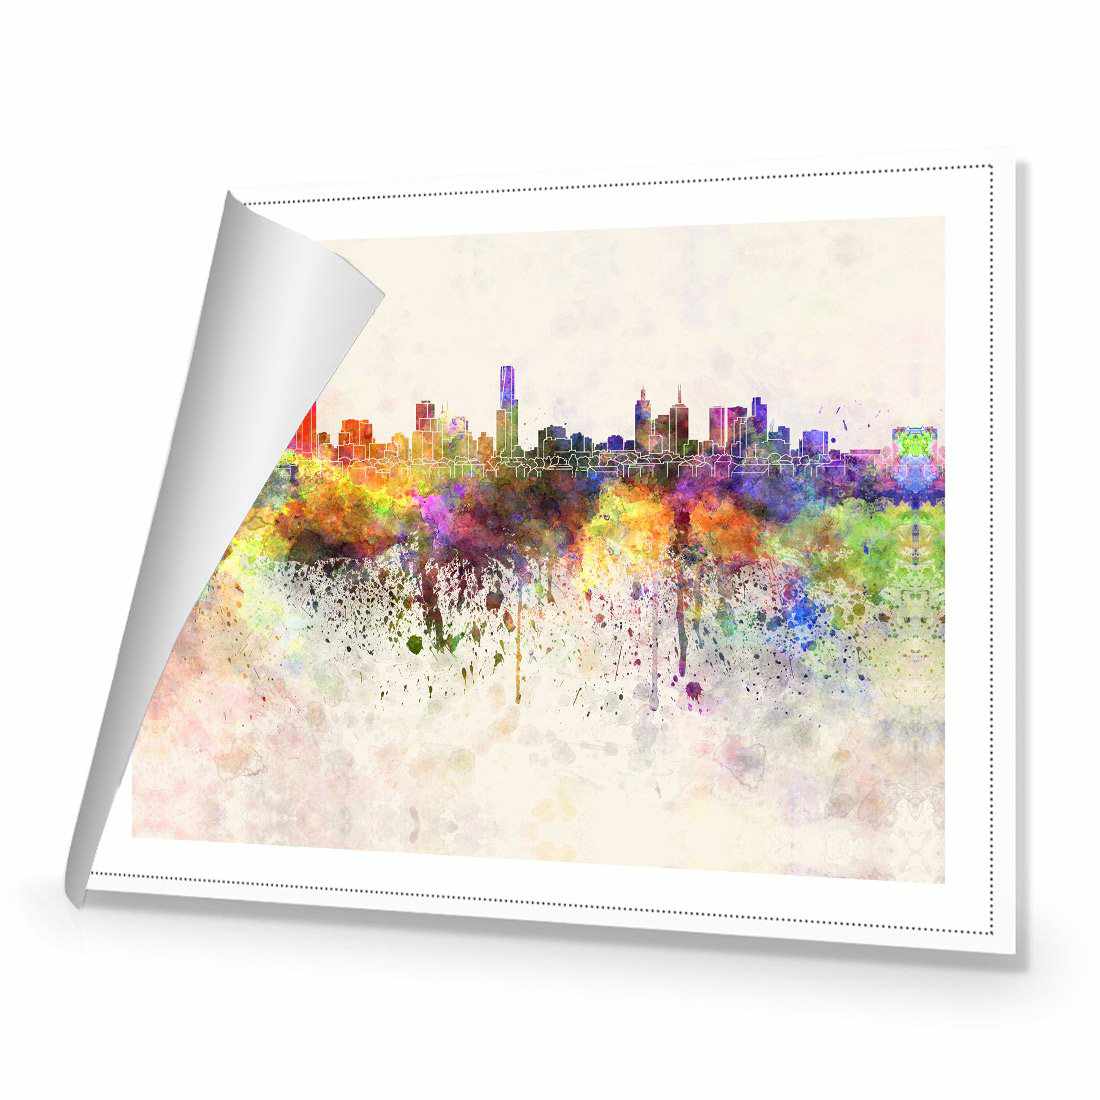 Melbourne Skyline Watercolour Canvas Art-Canvas-Wall Art Designs-45x30cm-Rolled Canvas-Wall Art Designs